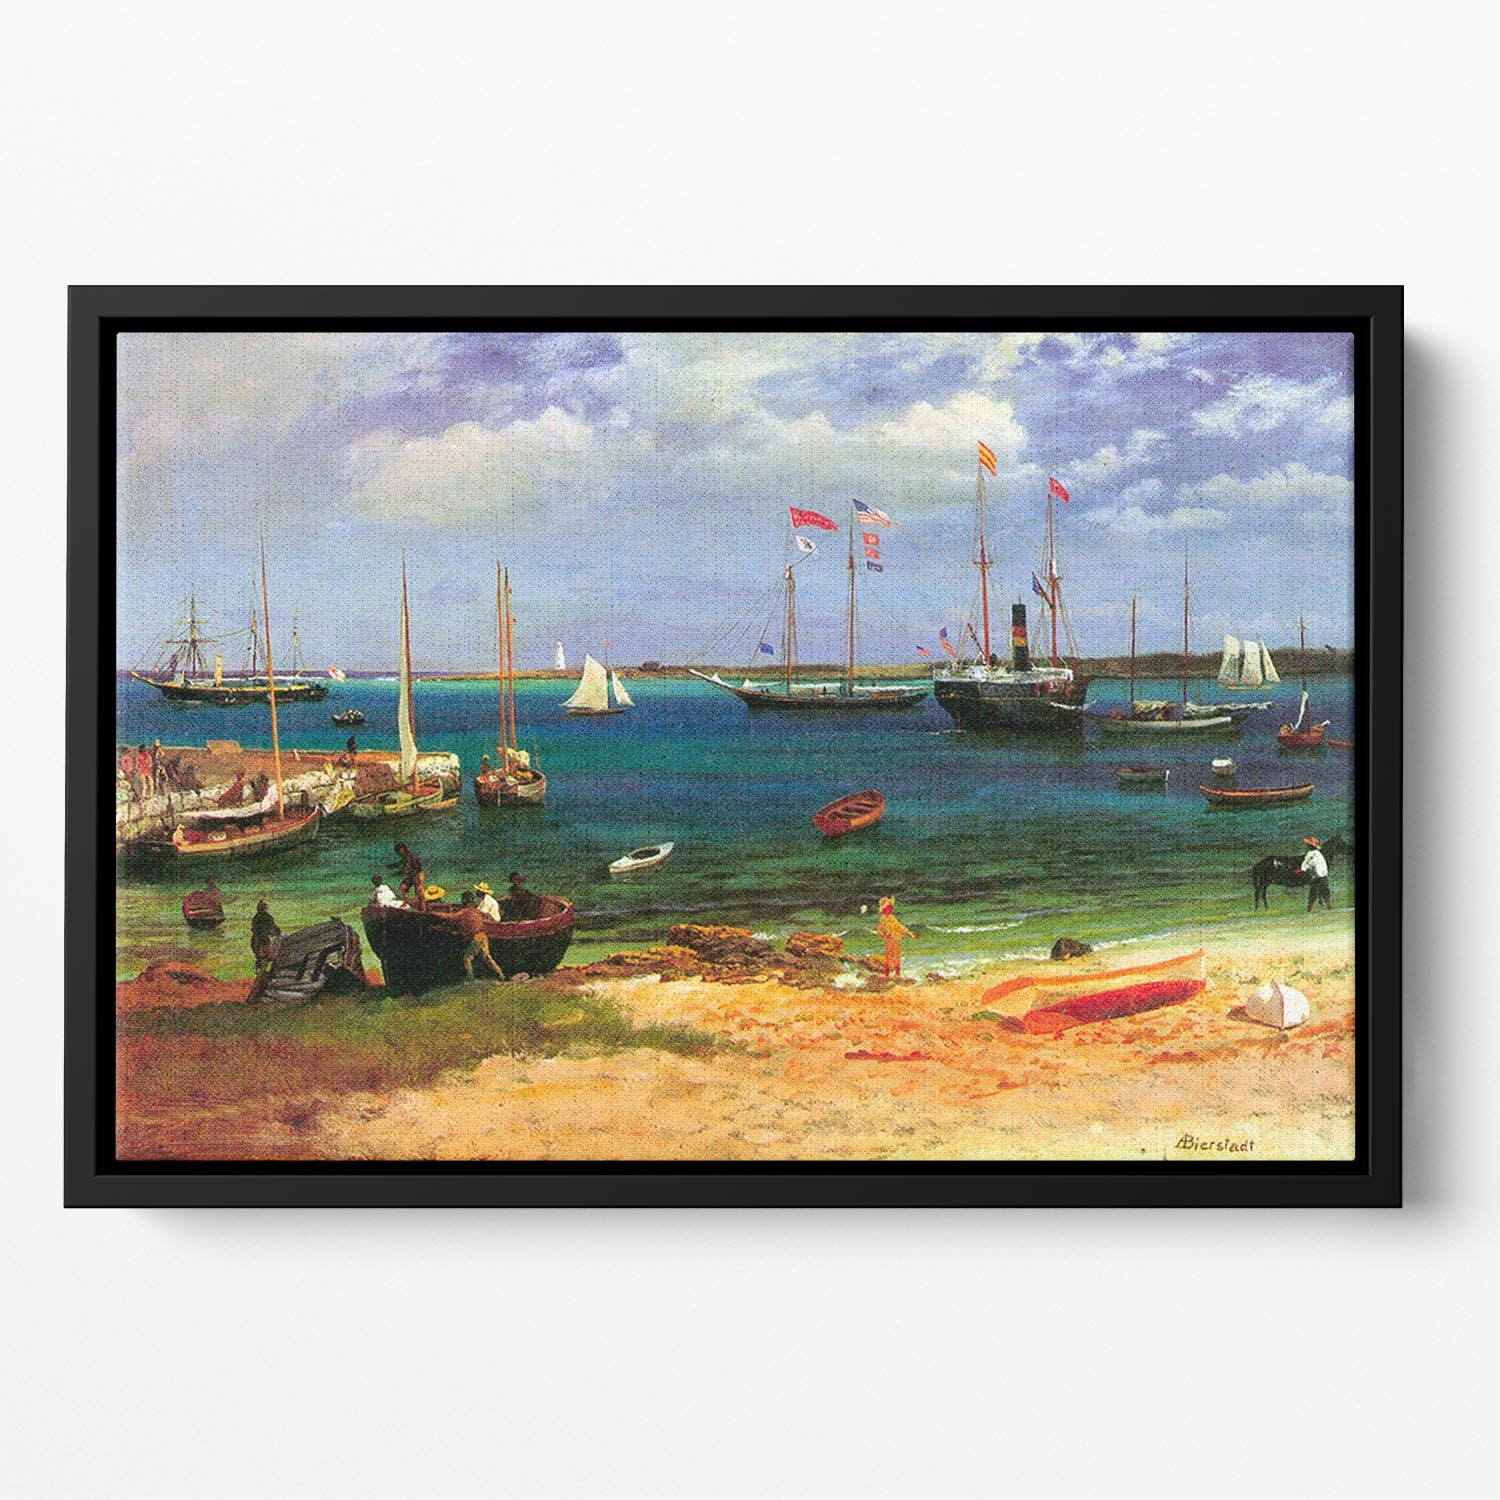 Nassau port by Bierstadt Floating Framed Canvas - Canvas Art Rocks - 2